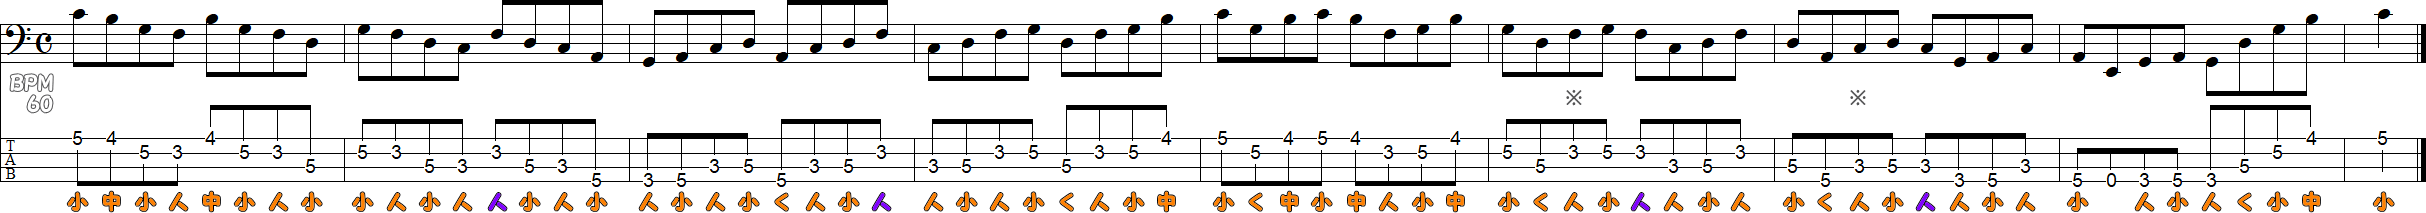 3フレット4フィンガーのスケール練習譜面2